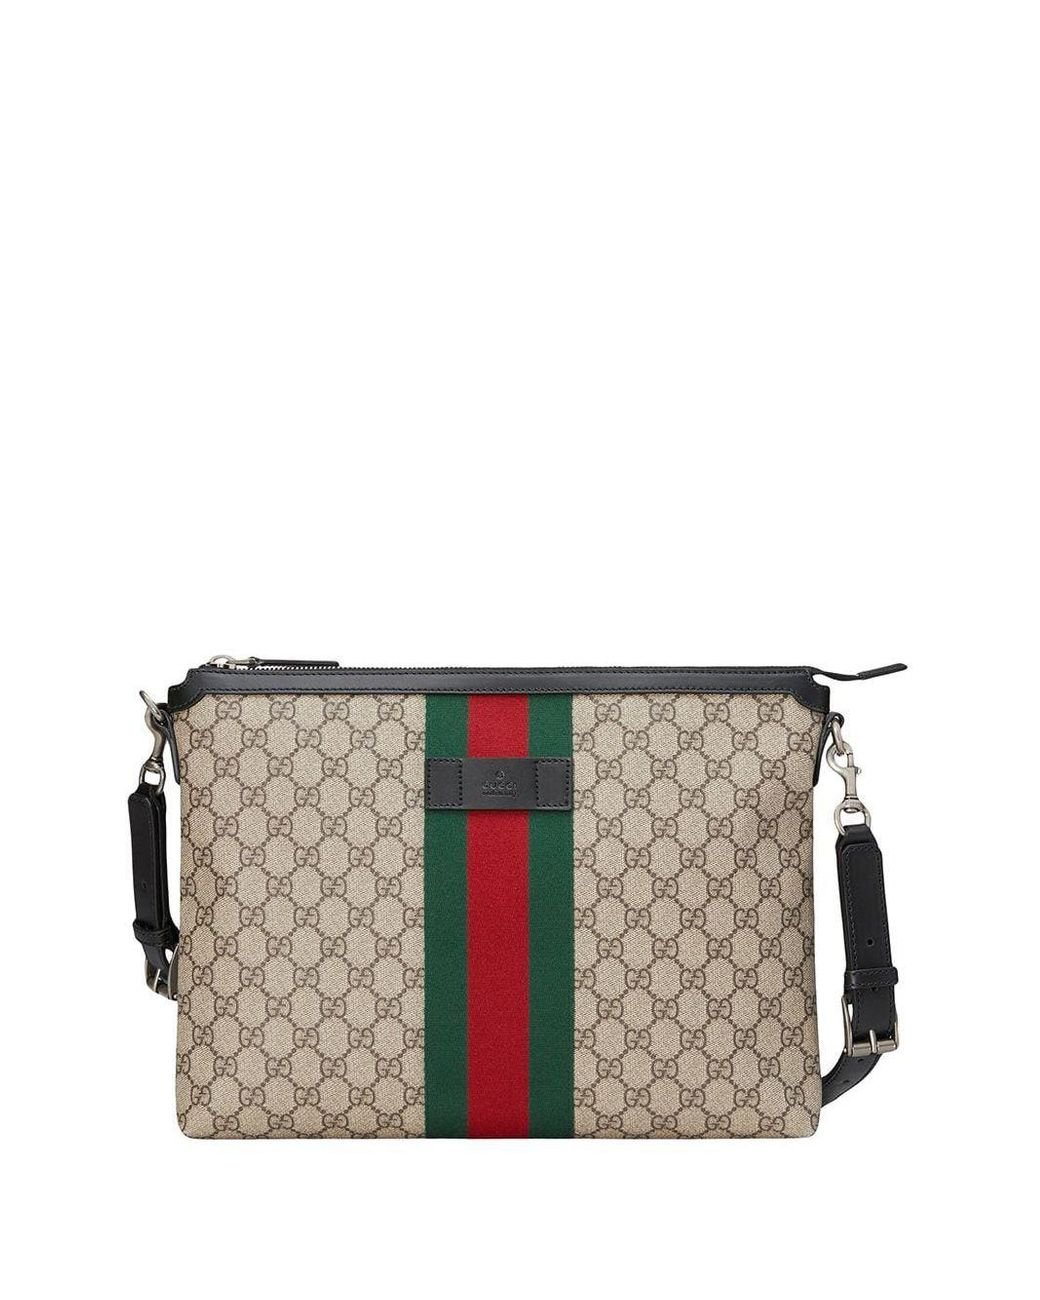 Gucci GG Supreme Medium Messenger Bag for Men